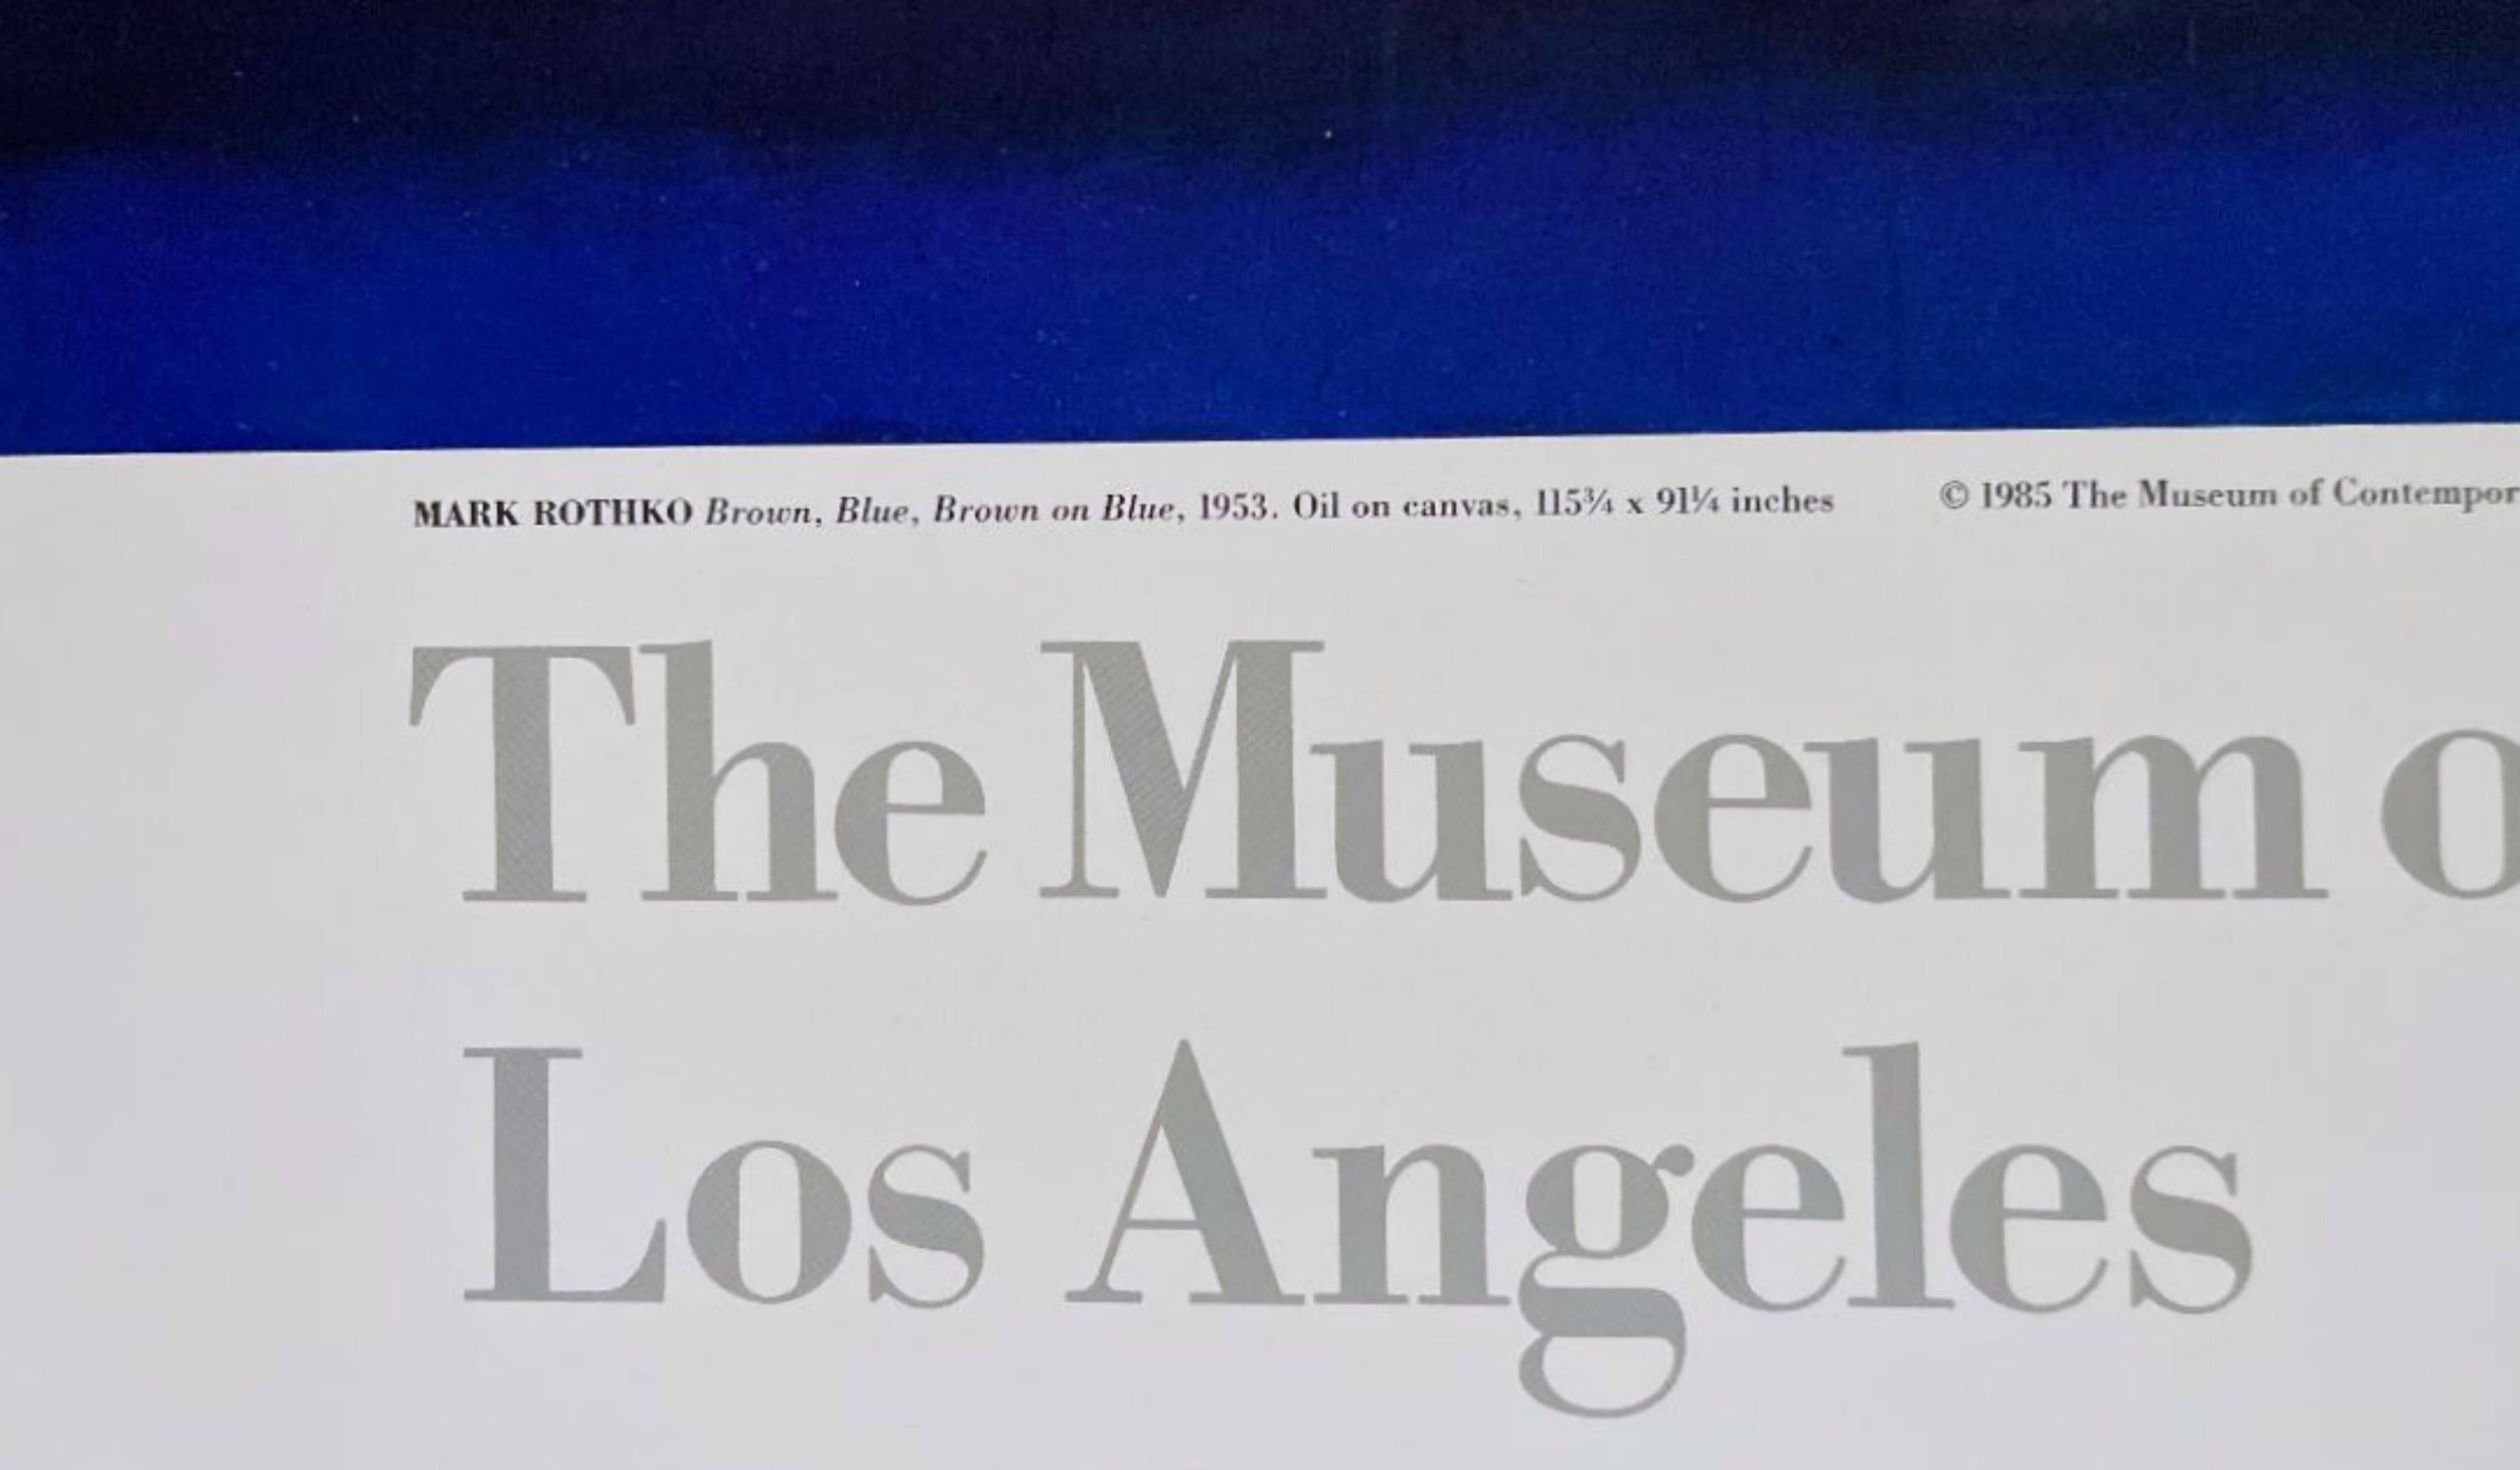 Mark Rothko
Musée d'Art Angels Art Collectional Collection, 1988
Affiche en lithographie offset
Non signé, édition de 1000 exemplaires
43 × 30 pouces
Non encadré

Publié par Poster Originals No. 409, pour le MOCA, Los Angeles, Troisième édition
non